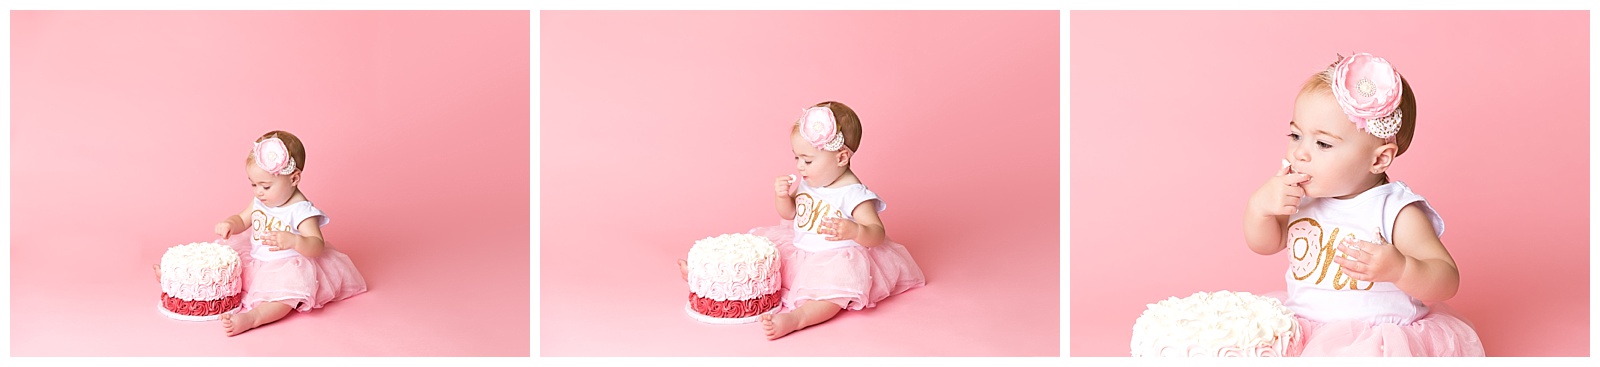 Newborn, baby, cake, cakesmash